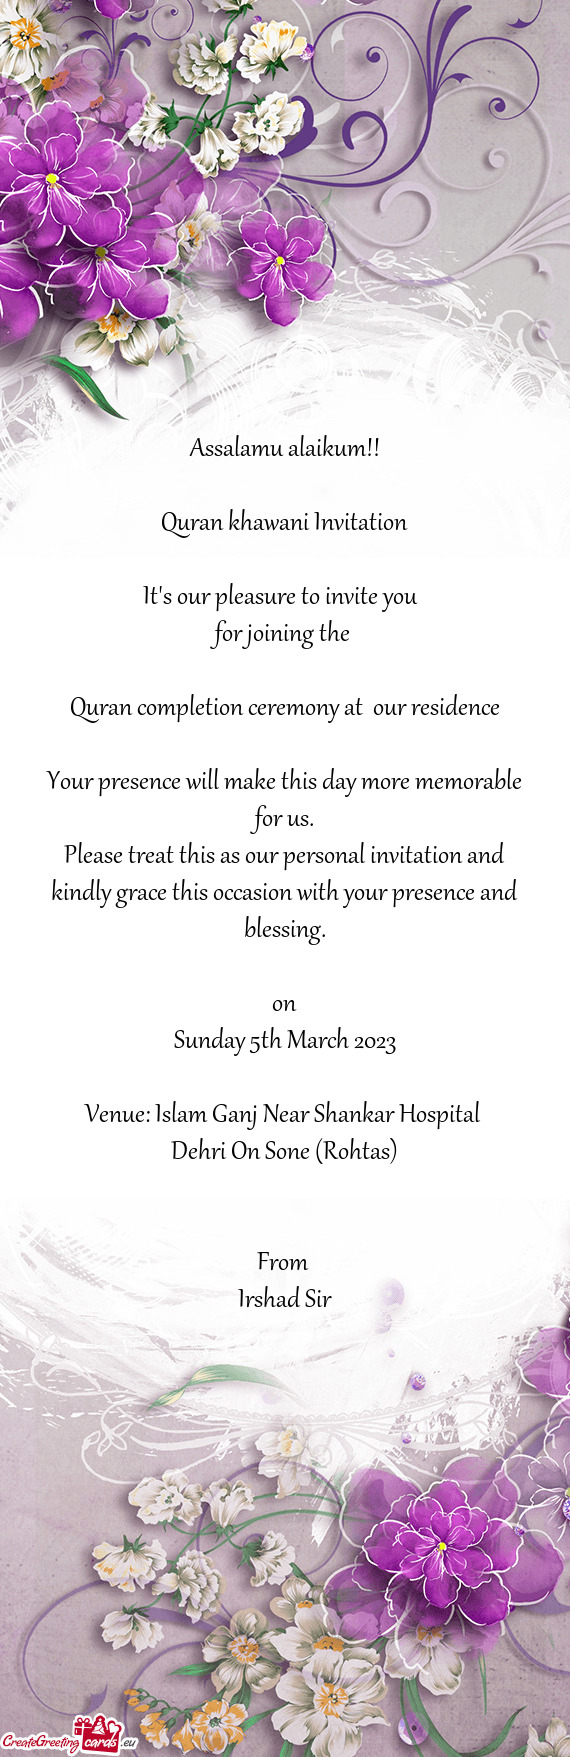 Venue: Islam Ganj Near Shankar Hospital